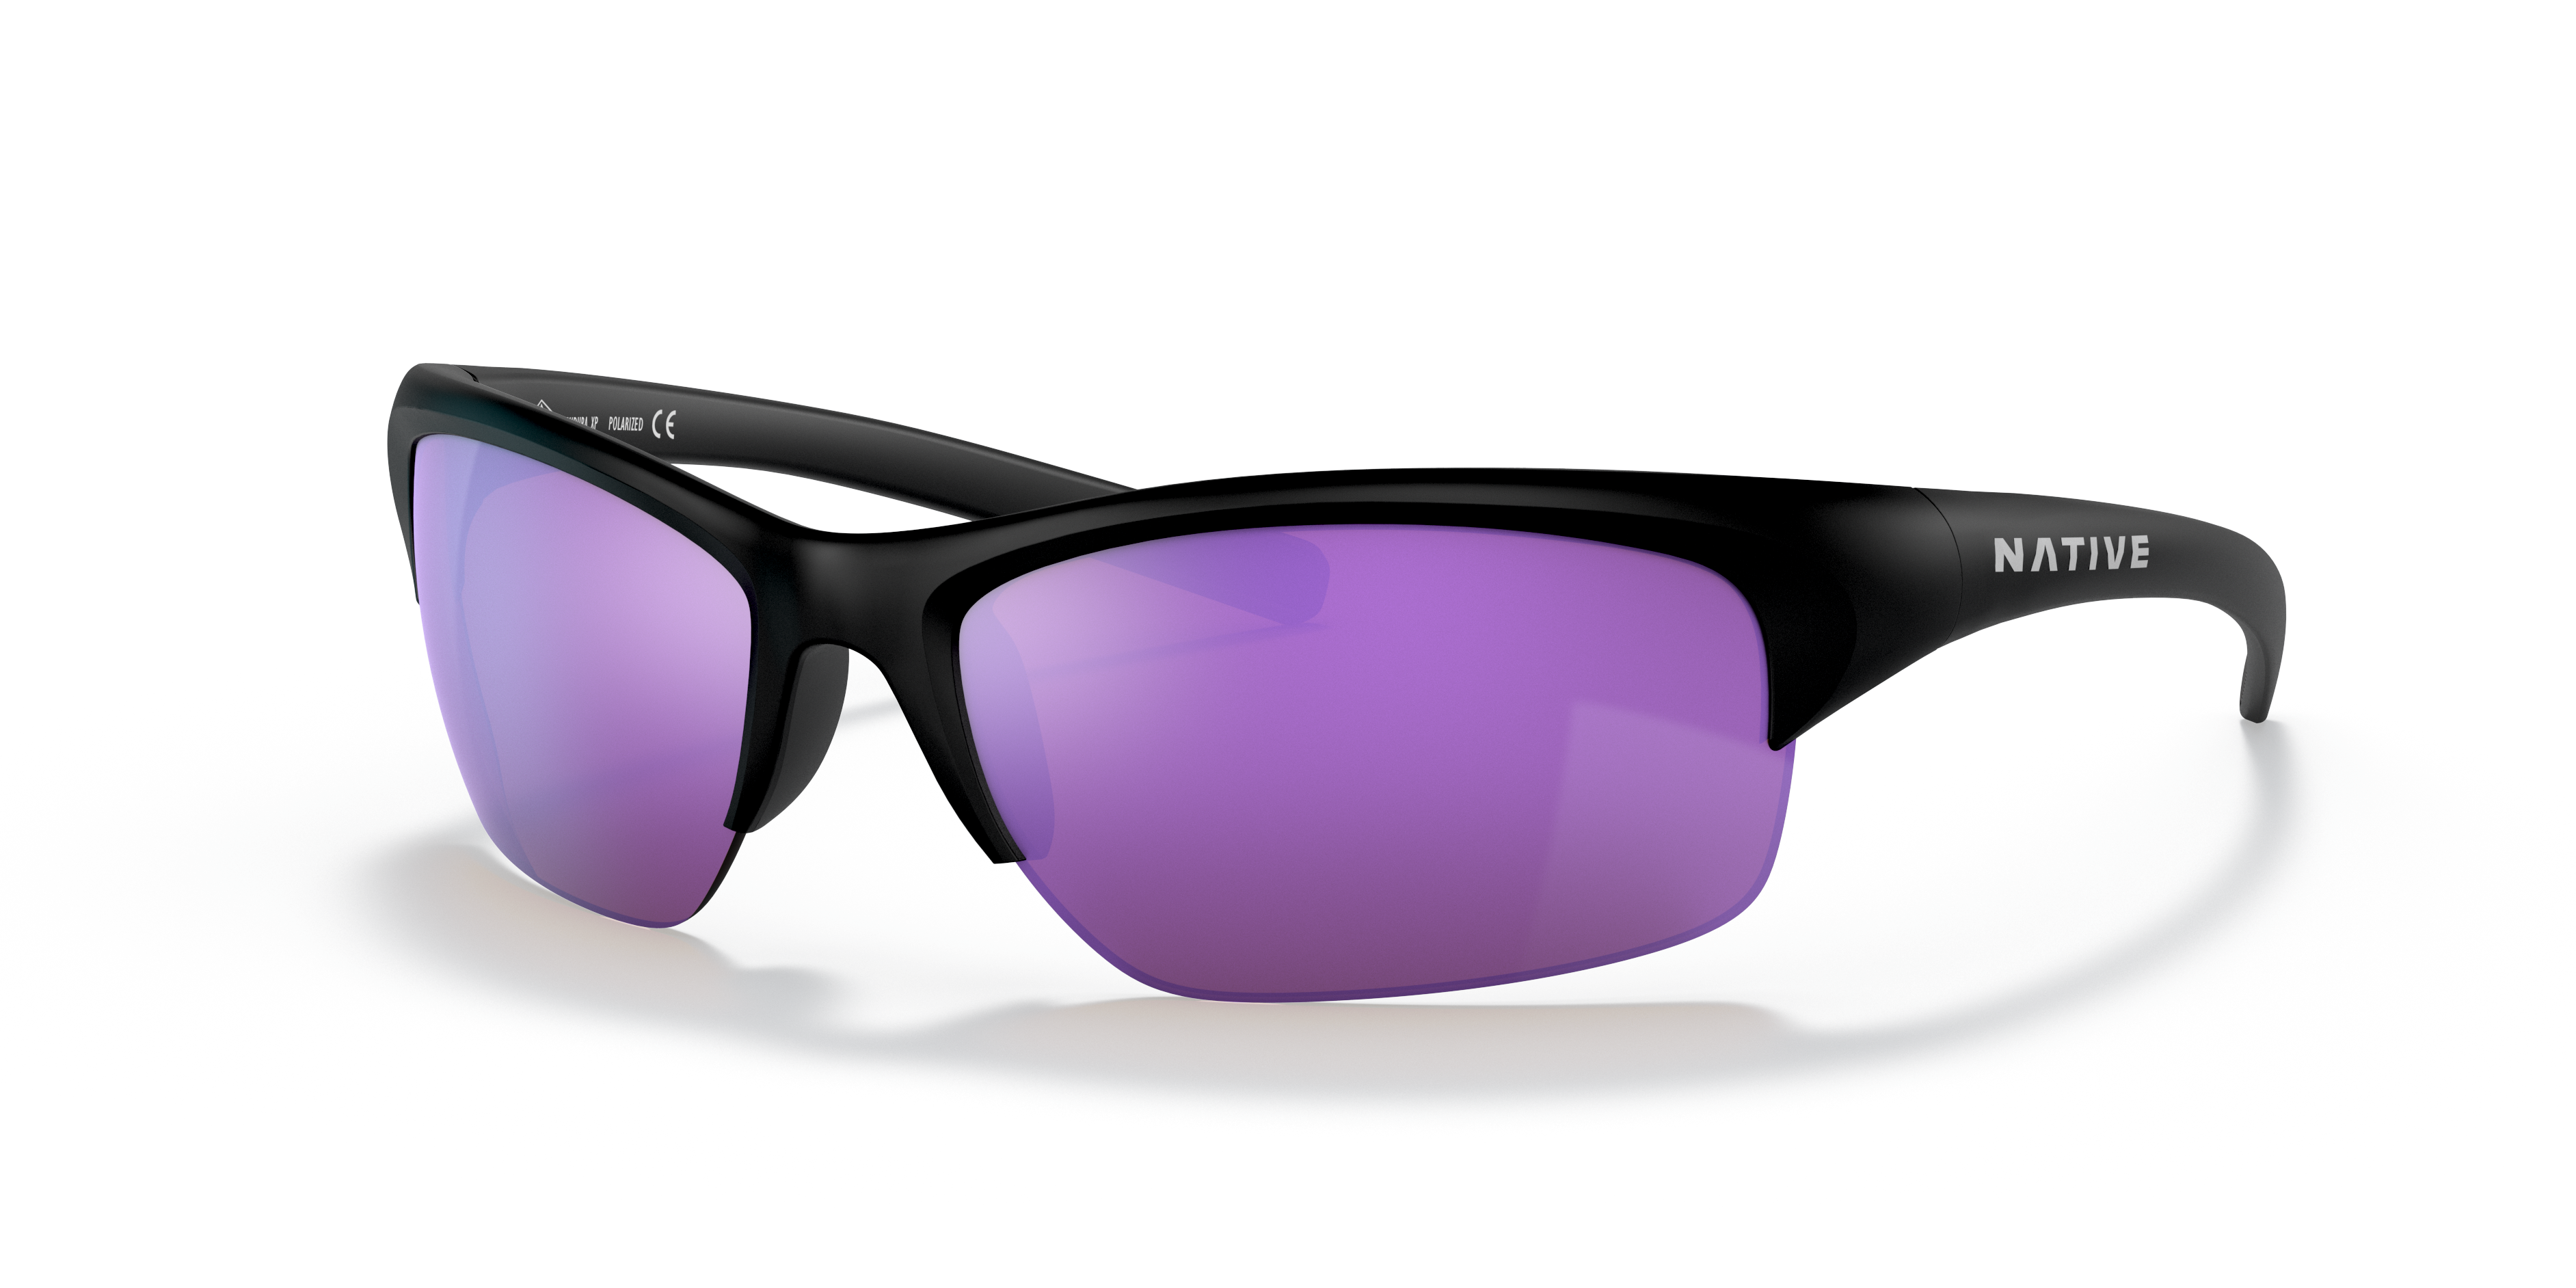 13780円 【大注目】 Native Eyewear Men's Endura Xp Rectangular Sunglasses 商品カテゴリー: サングラス 並行輸入品